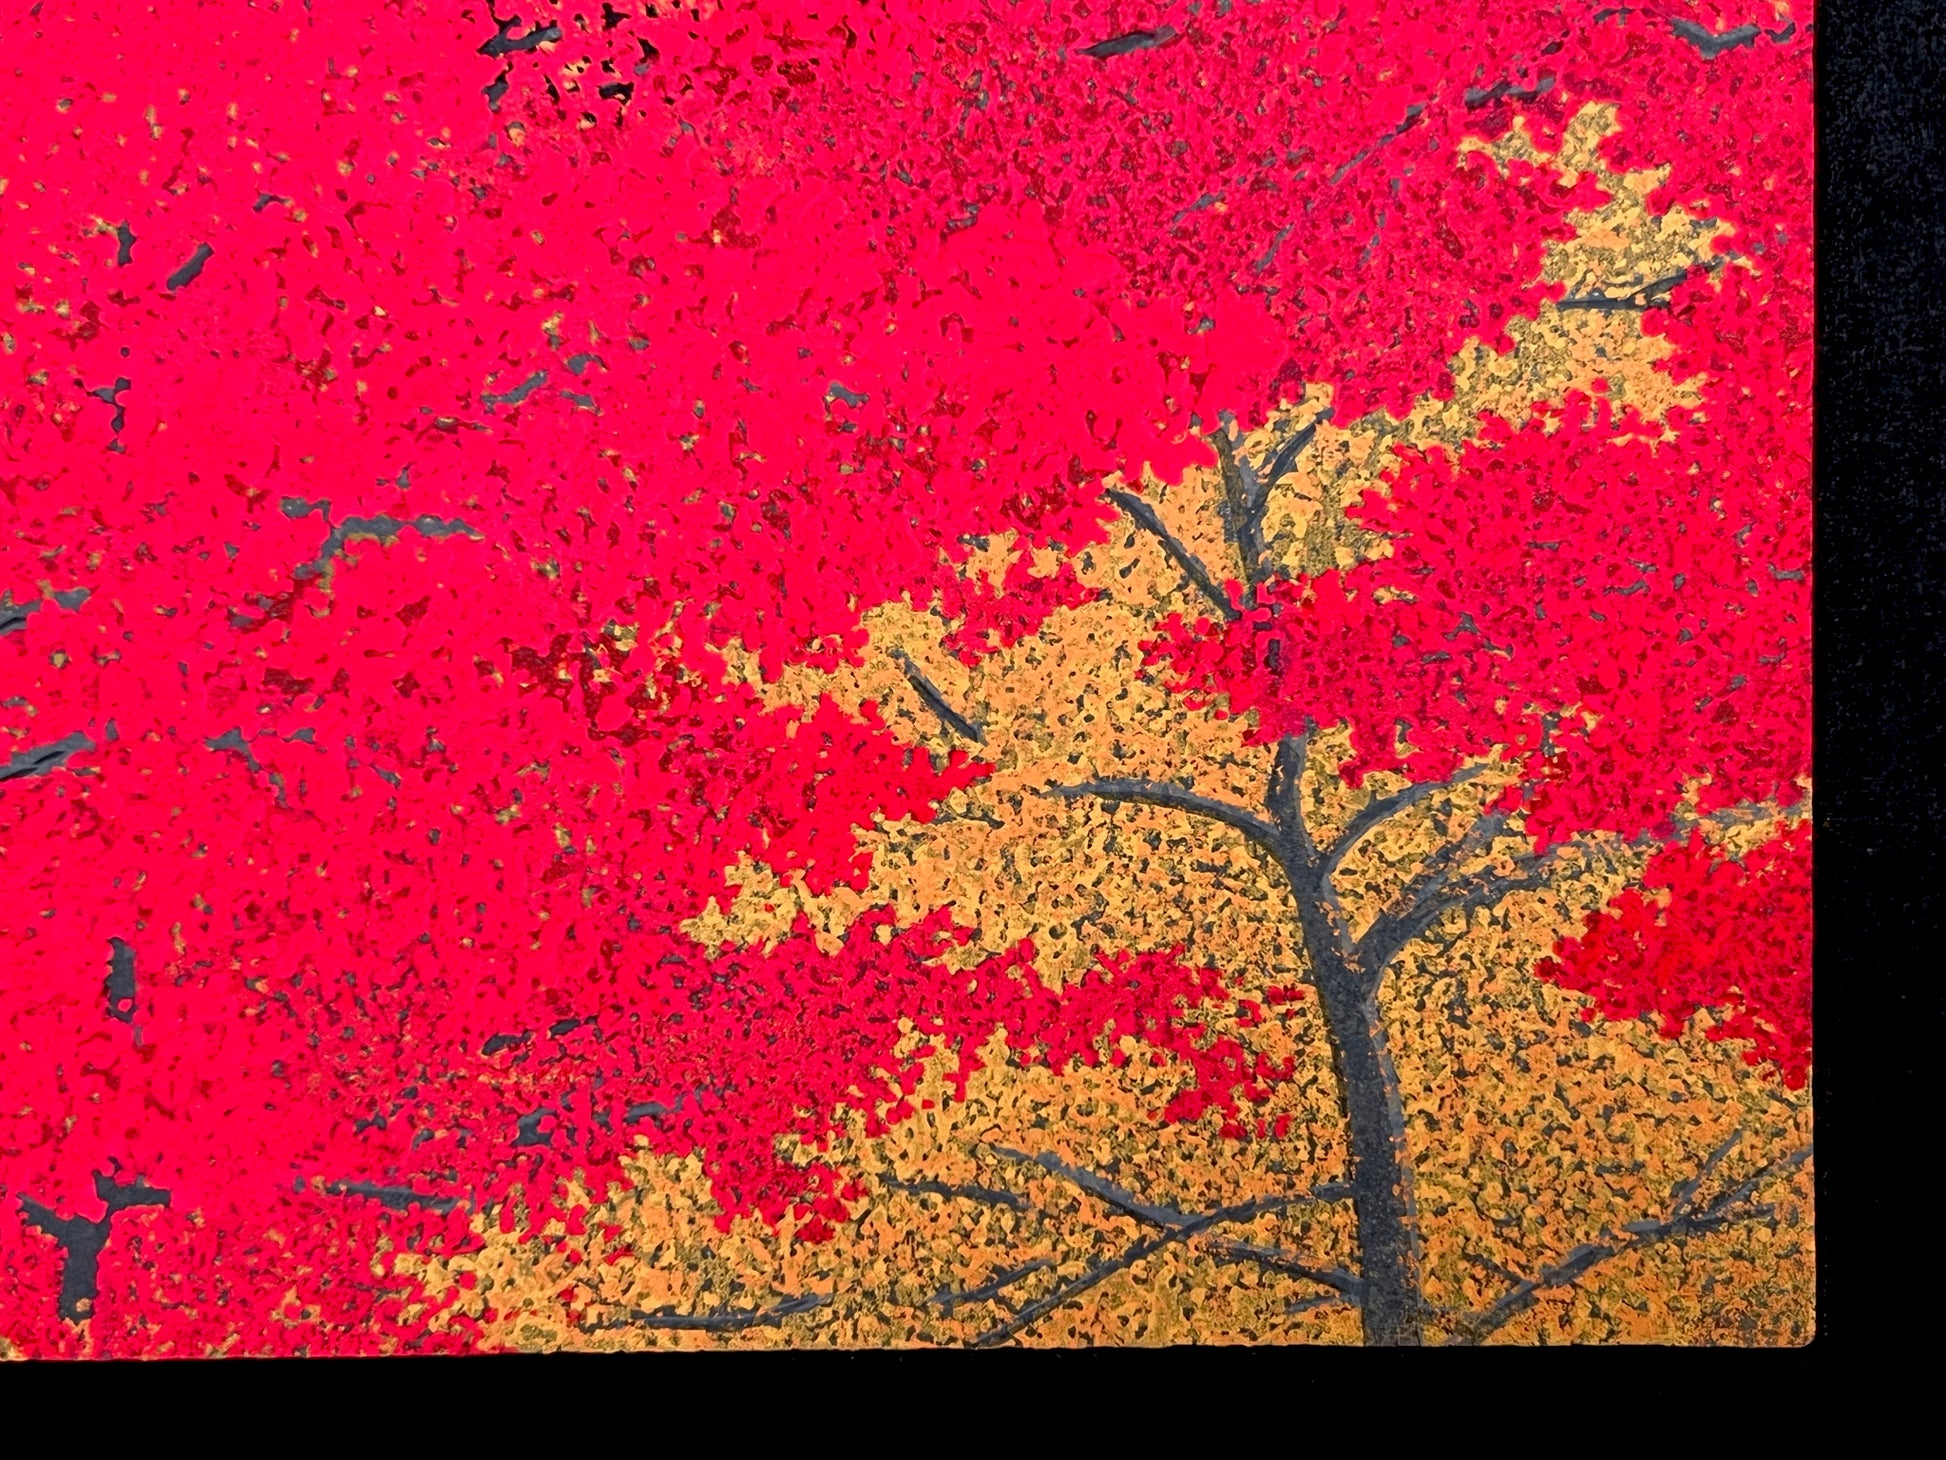 estampe japonaise contemporaine érables rouges à l'automne, feuillage rouge et or